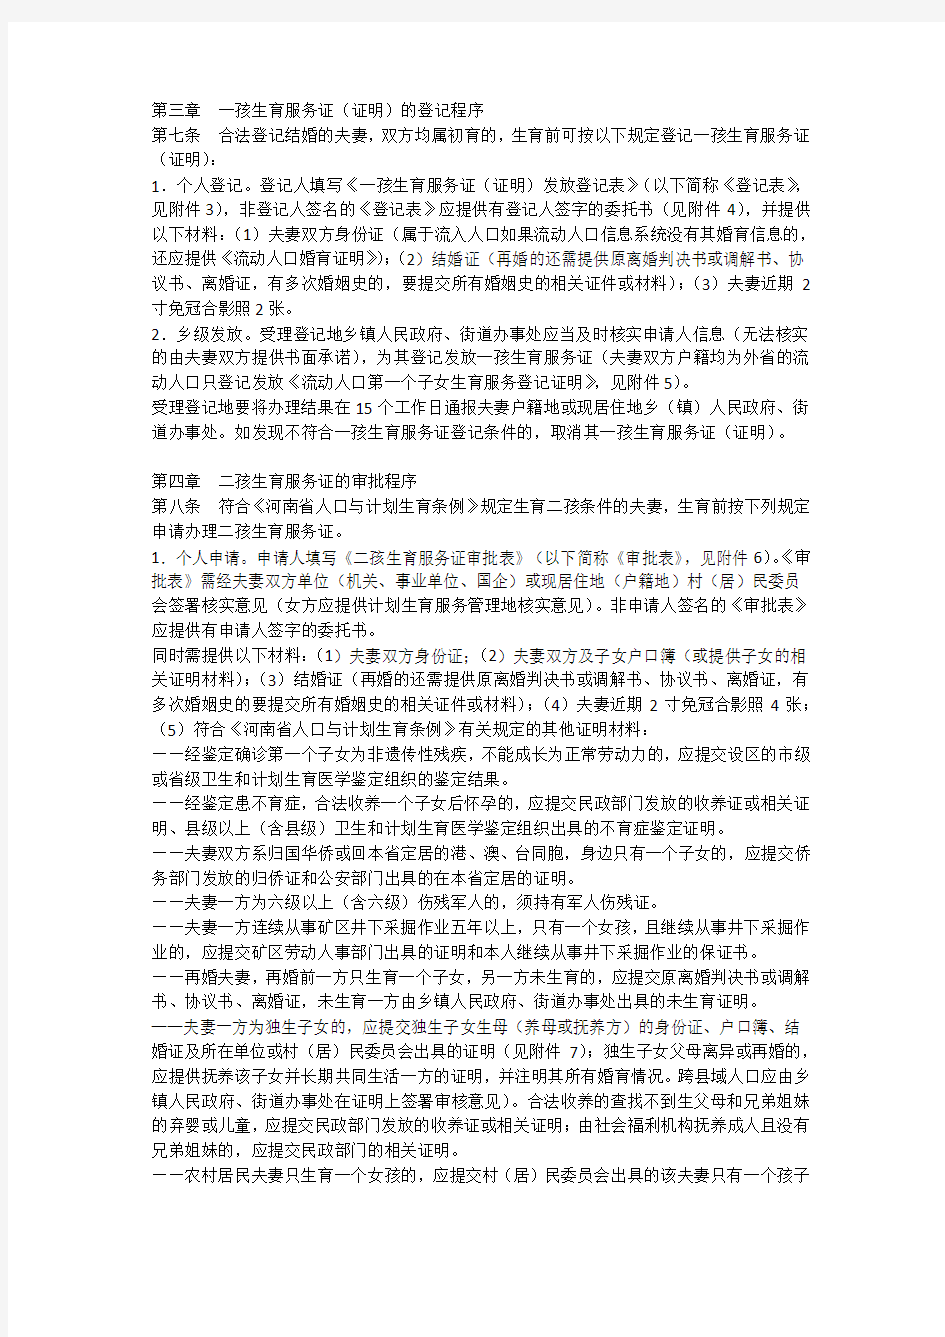 河南省卫生计生委关于印发《河南省生育服务证管理办法》的通知